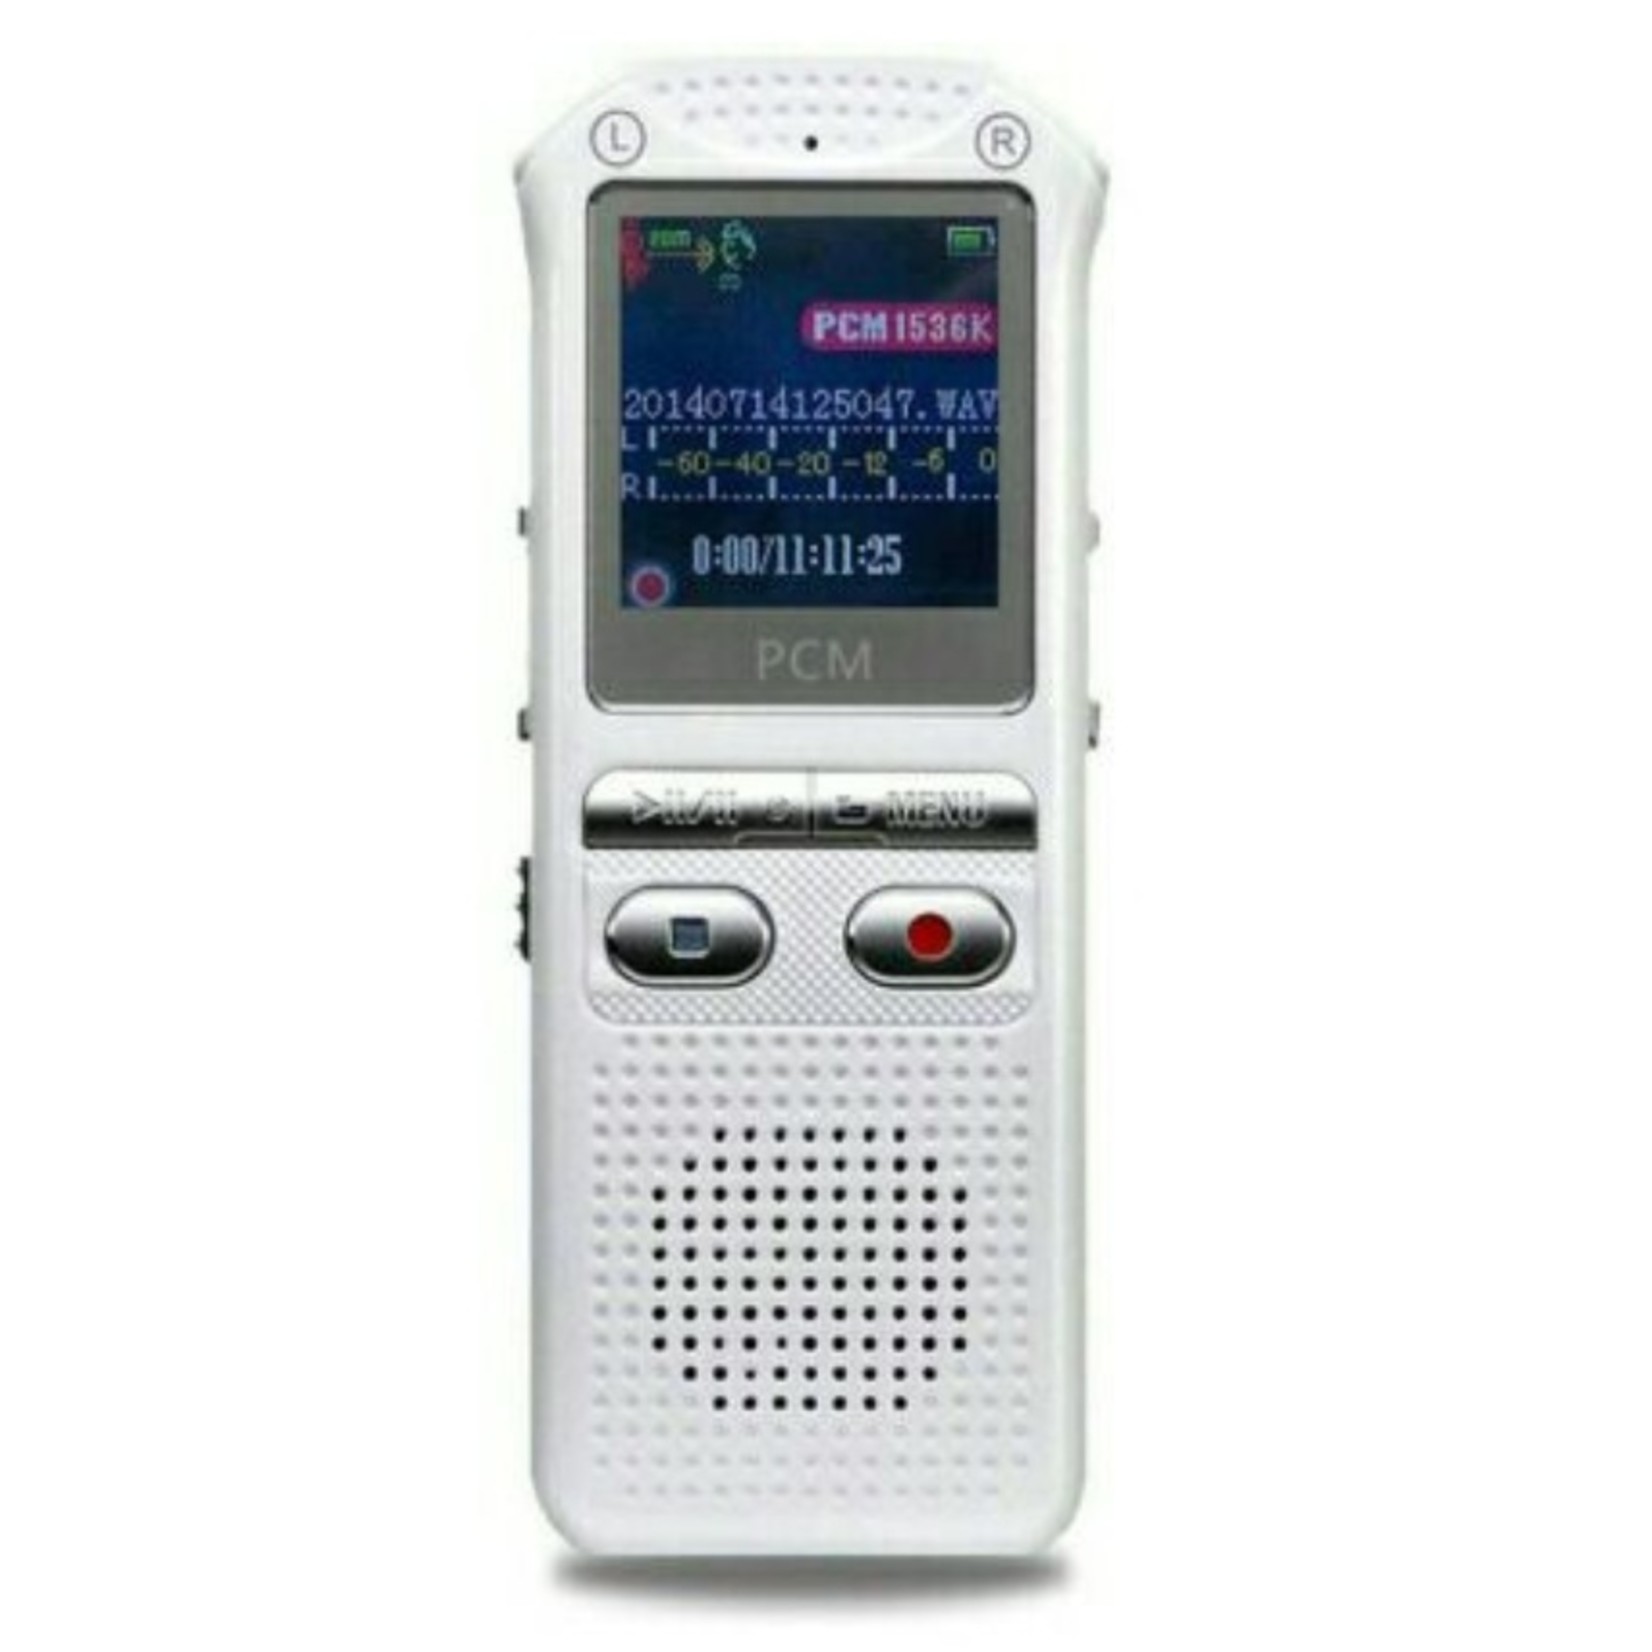 audiorecorder 60m, spraakrecorder 16GB, tijdstempel + spraakgestuurd + wachtwoord digitale recorder